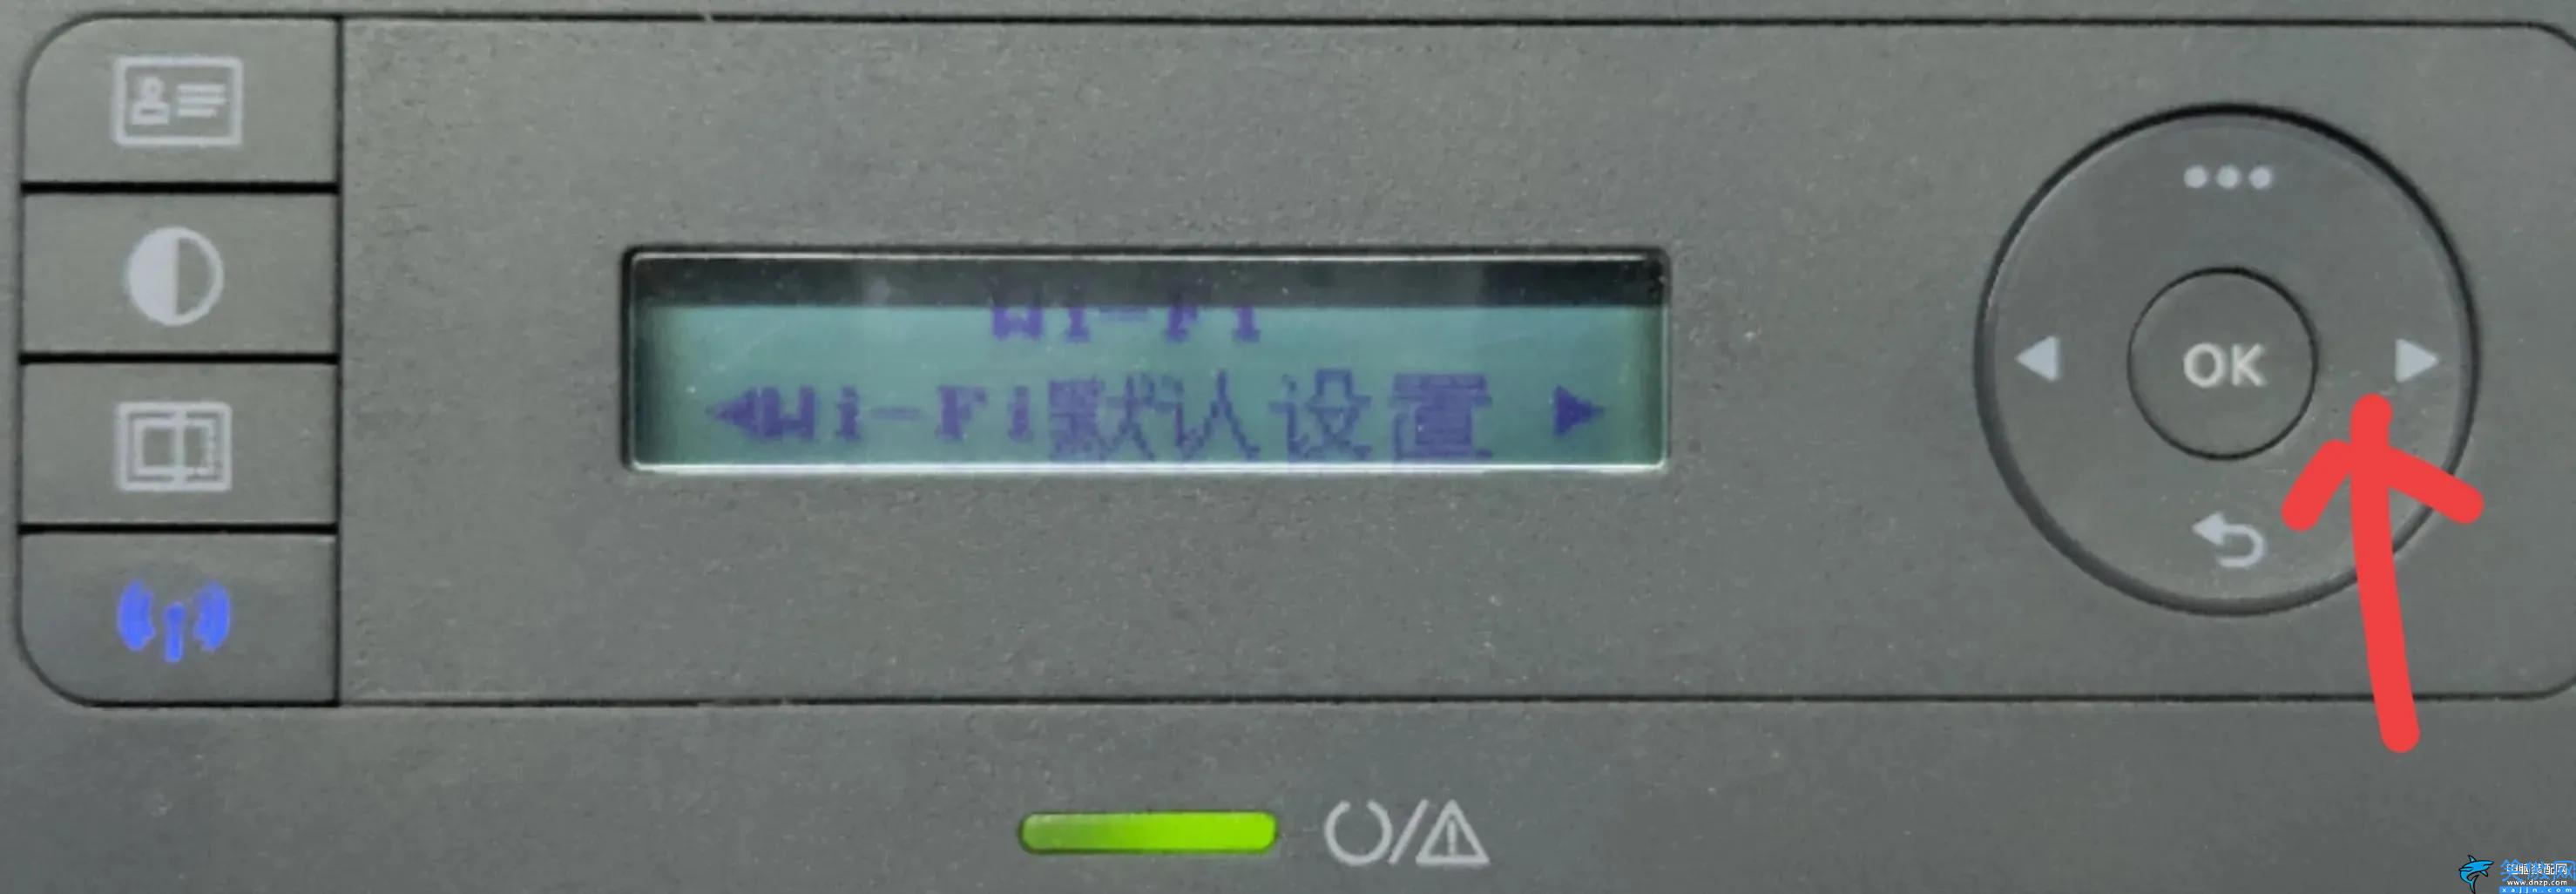 惠普136w打印机怎么连接无线网络,惠普136w打印机连接无线网络教程